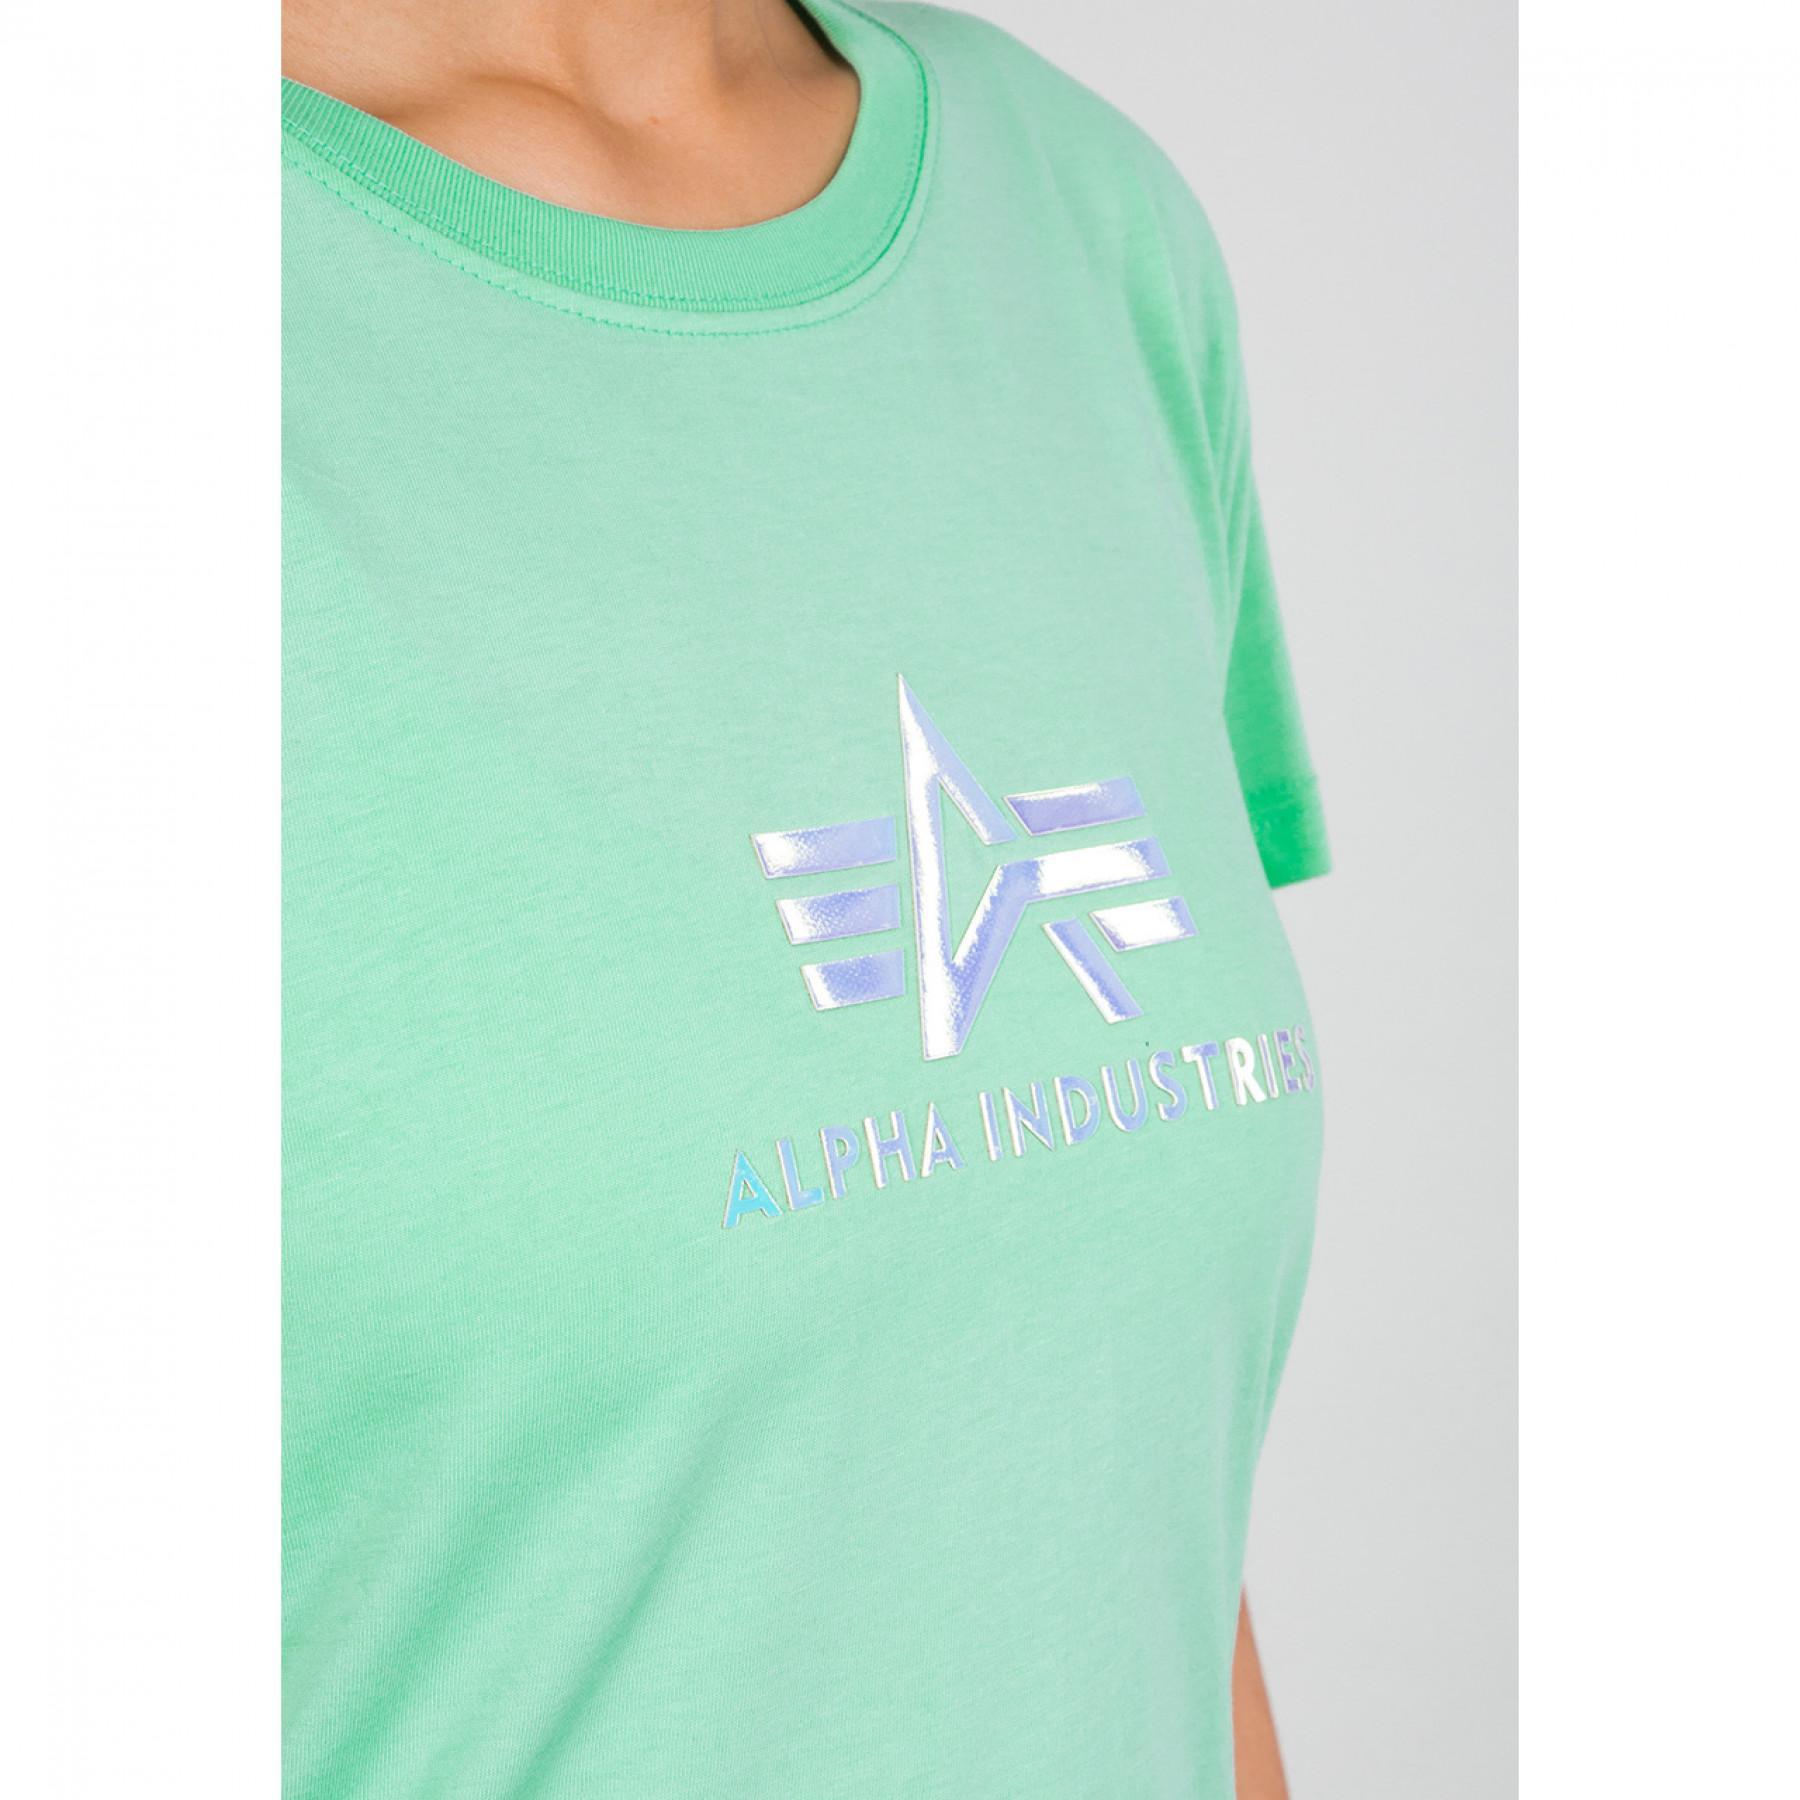 Women's T-shirt Alpha Industries Rainbow